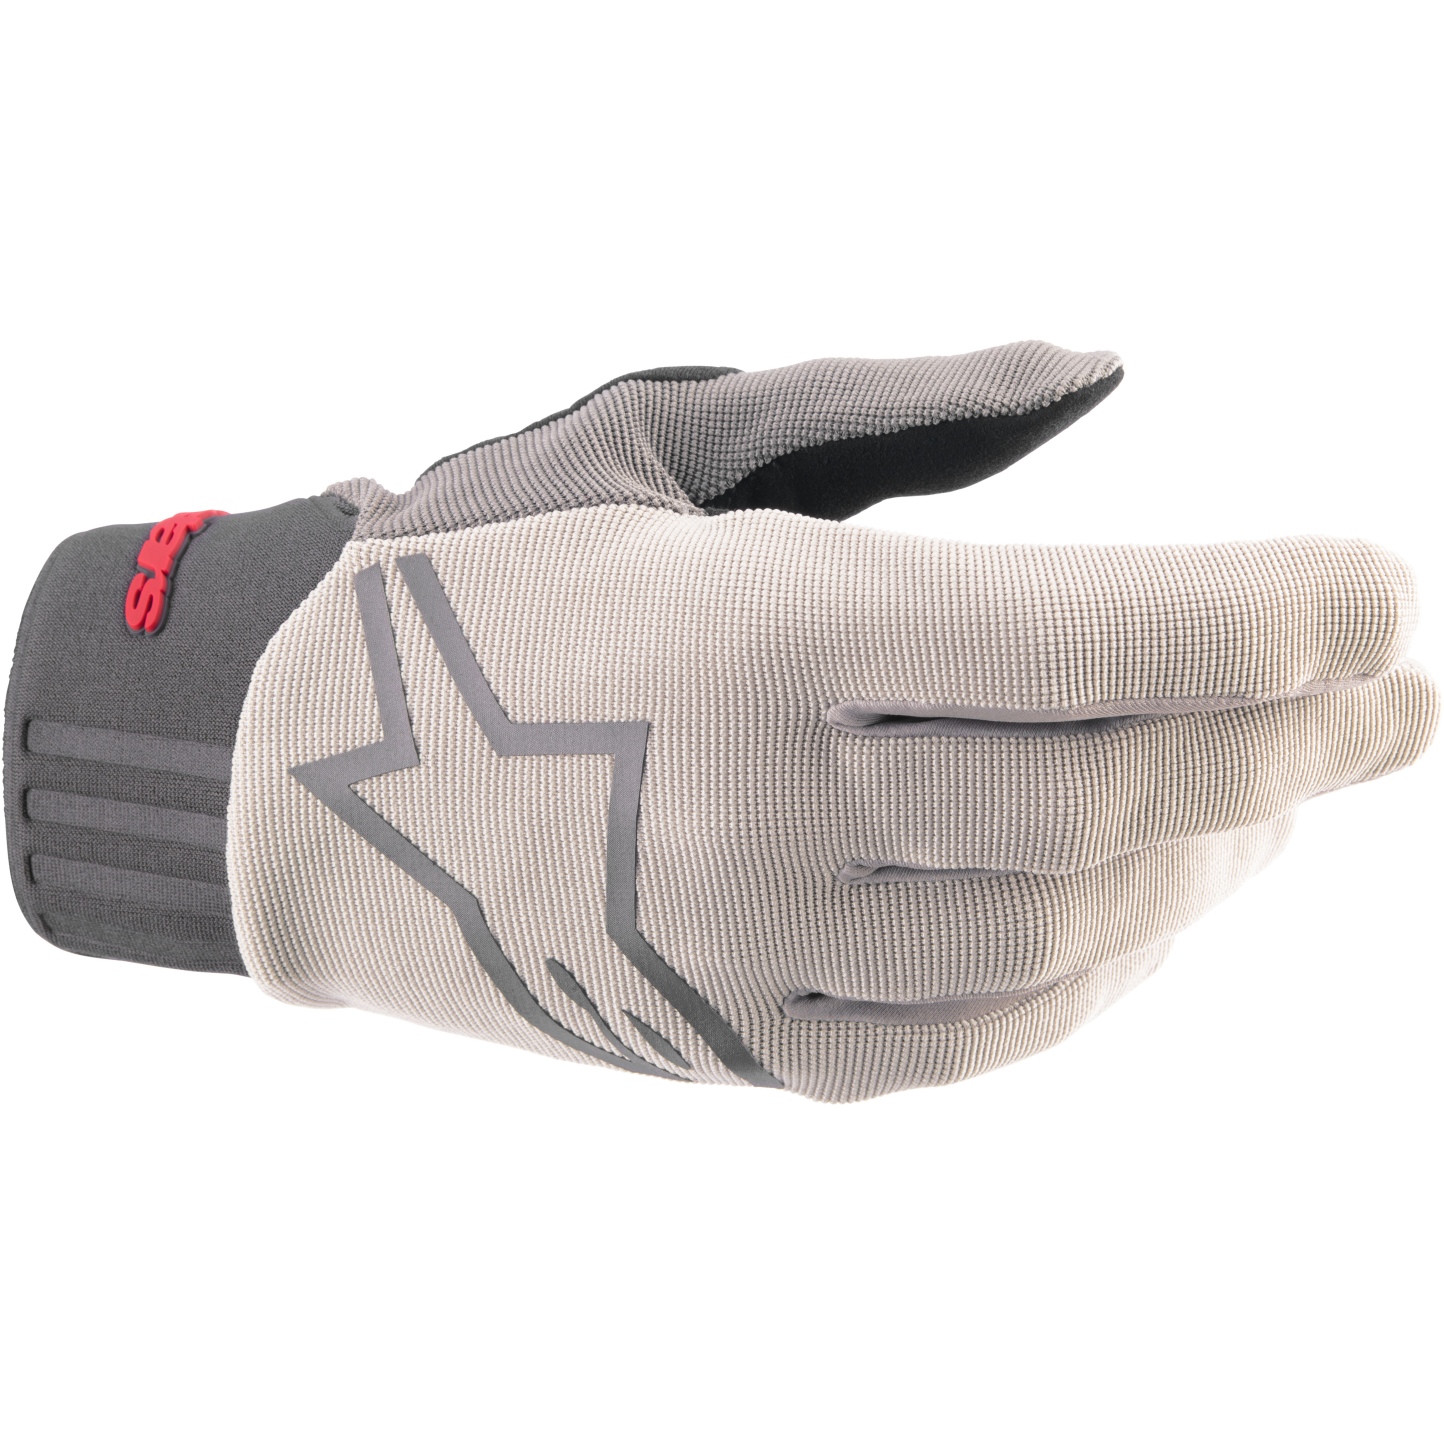 Produktbild von Alpinestars A-Dura Handschuhe - light gray